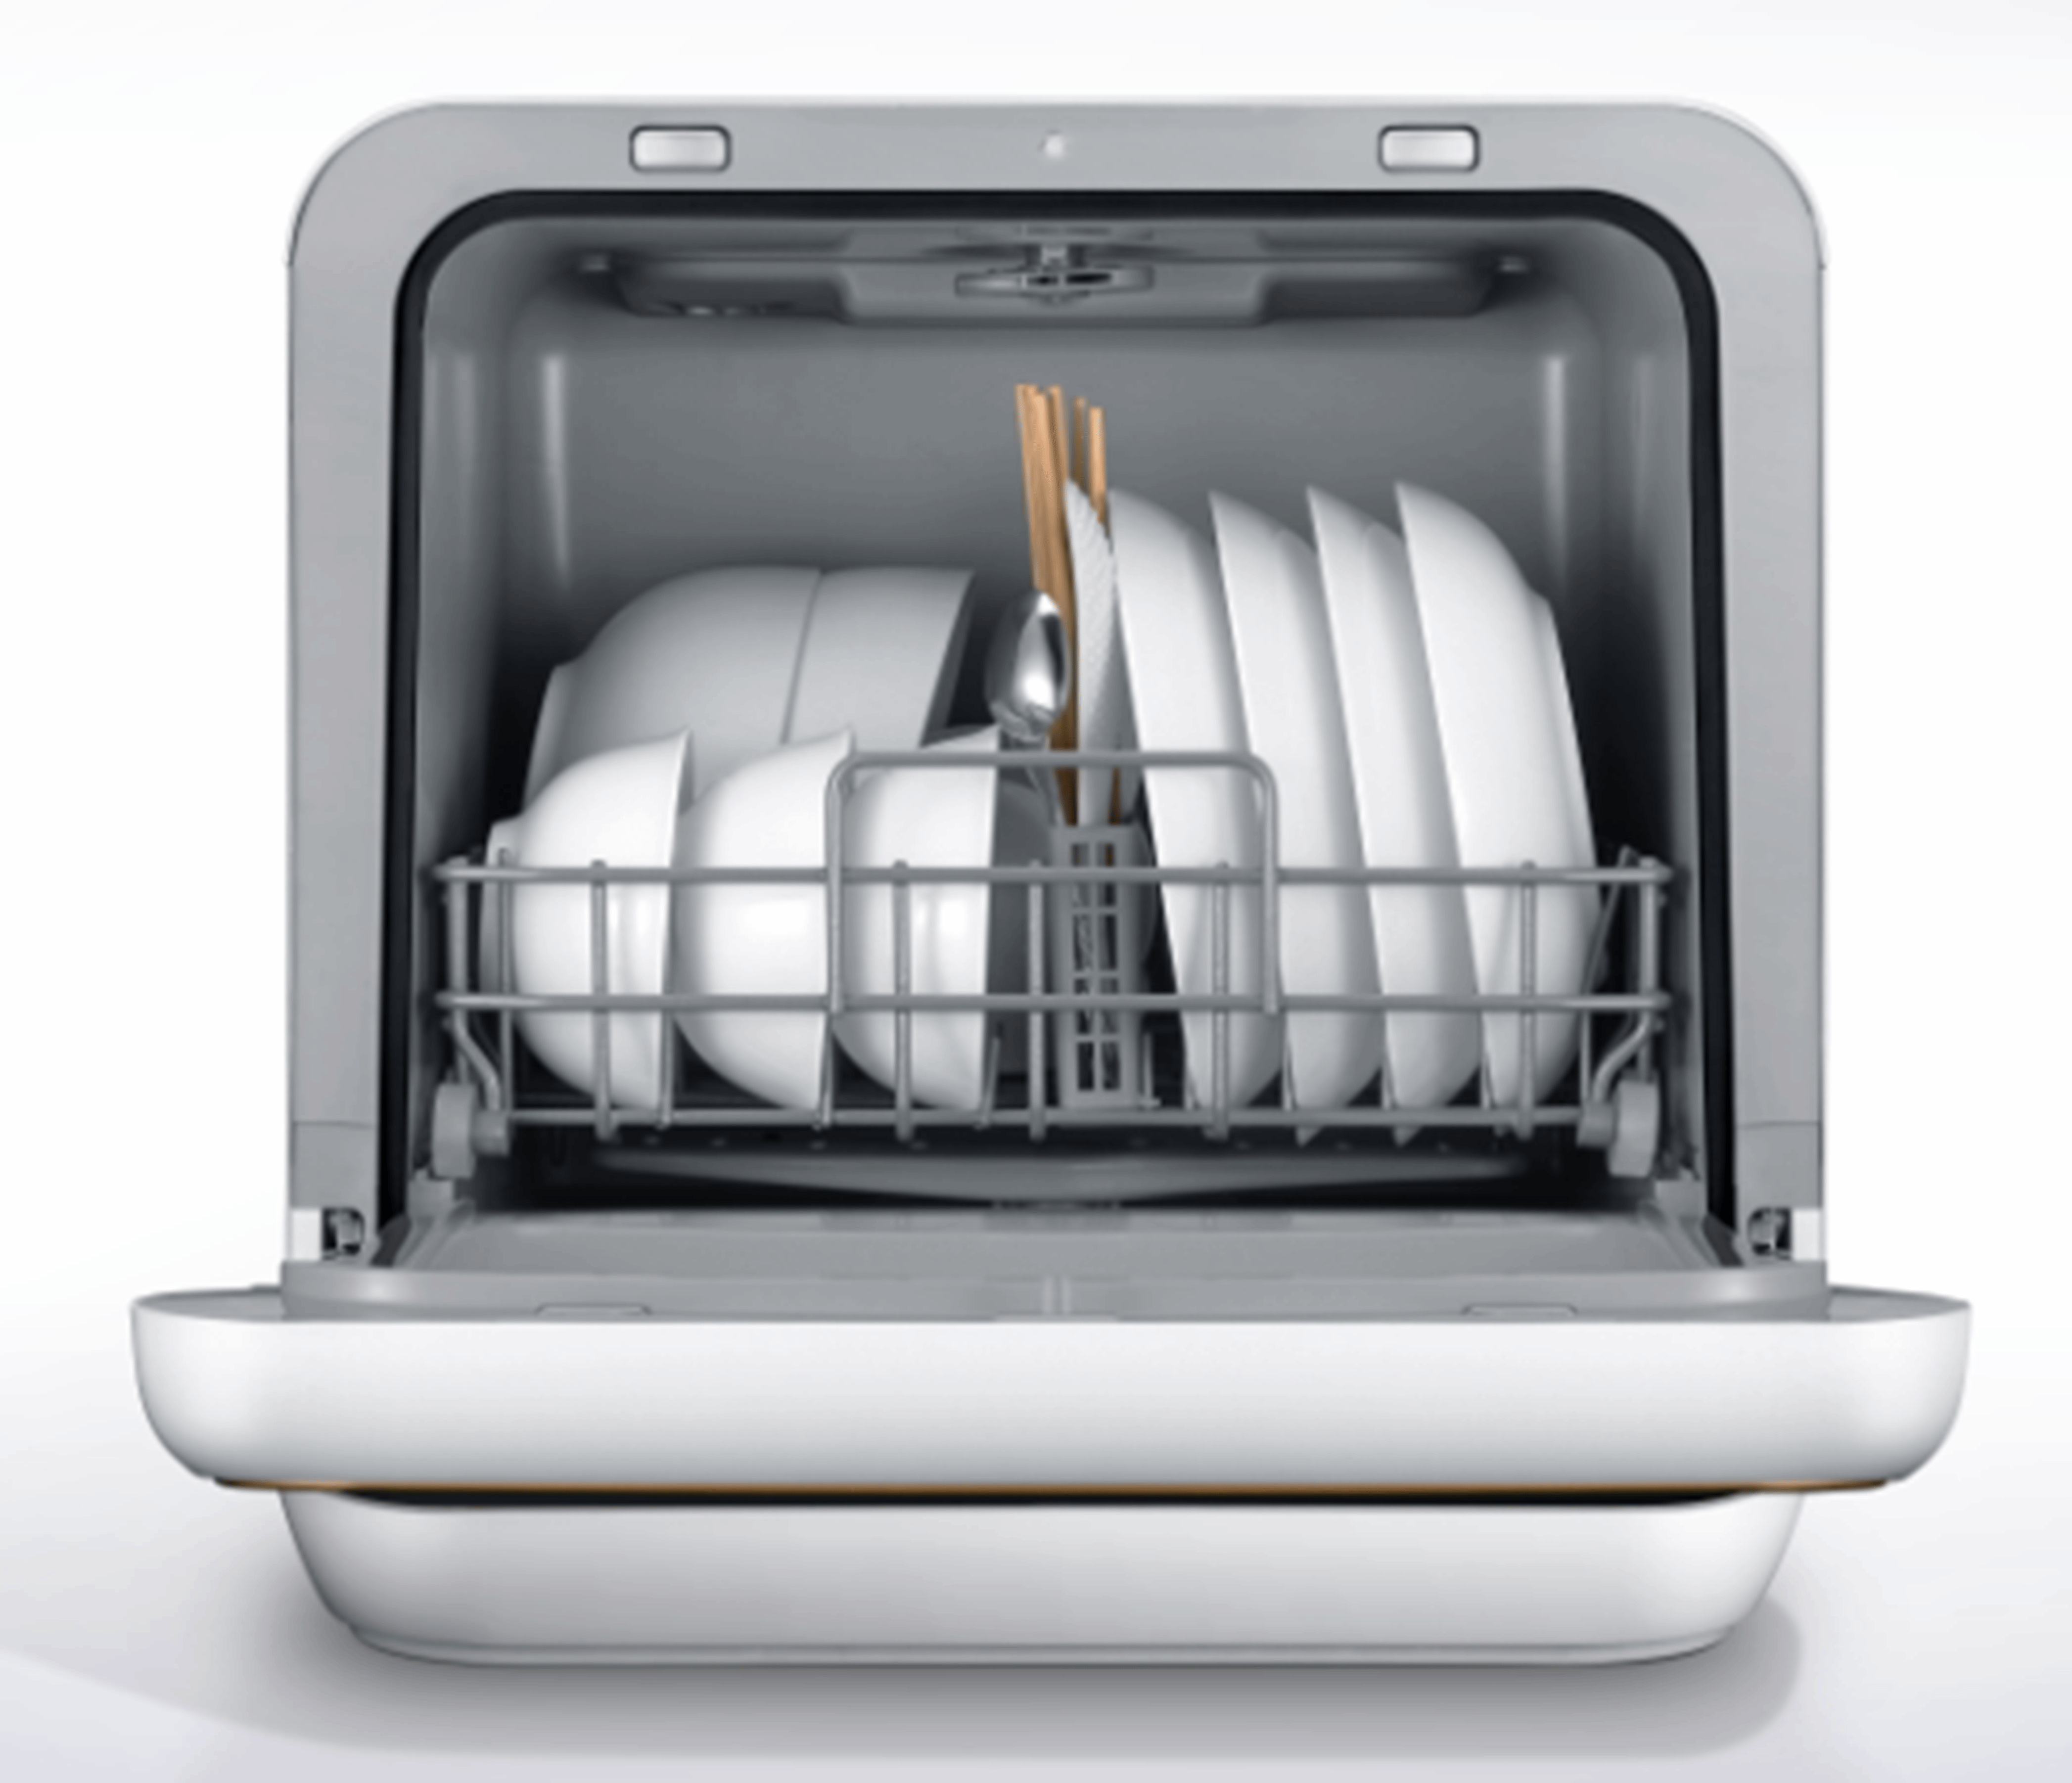 Toshiba 5L Dishwasher